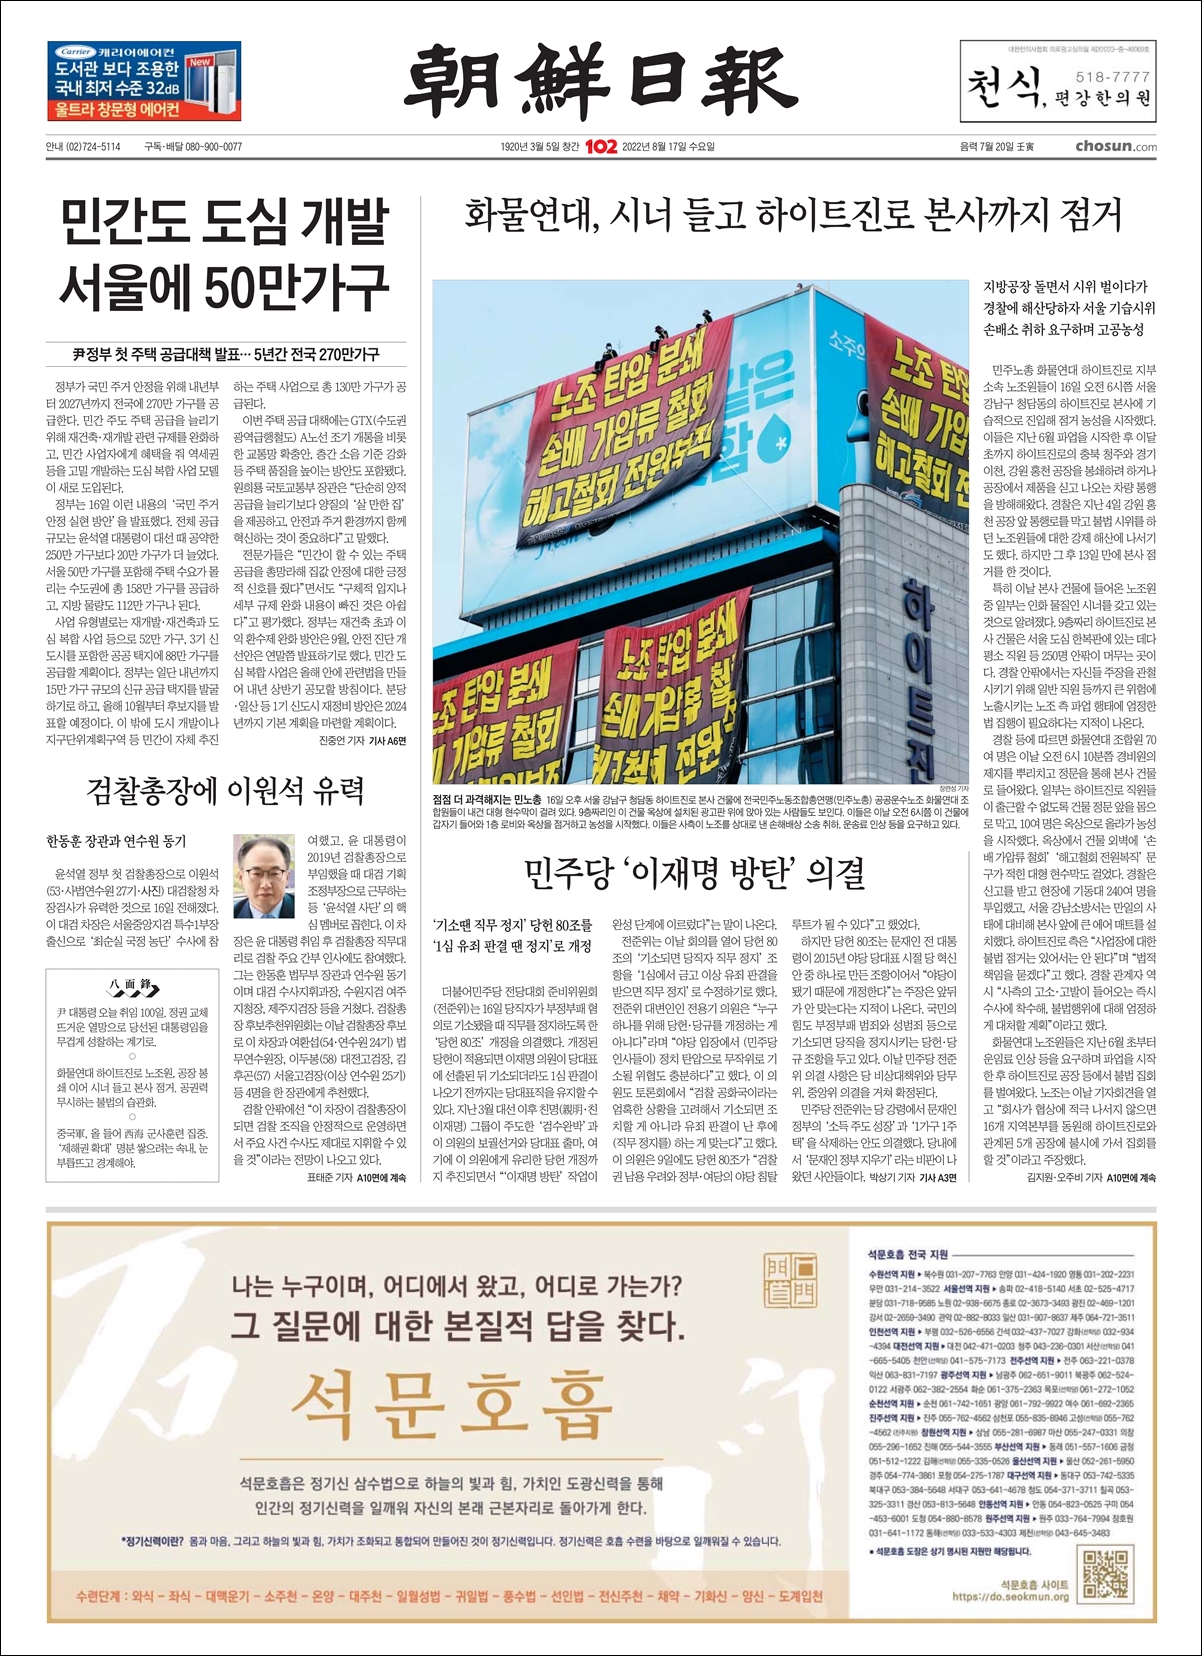 8월 178일(오늘자) 조선일보 1면 하단에 석문호흡 광고가 실렸습니다.